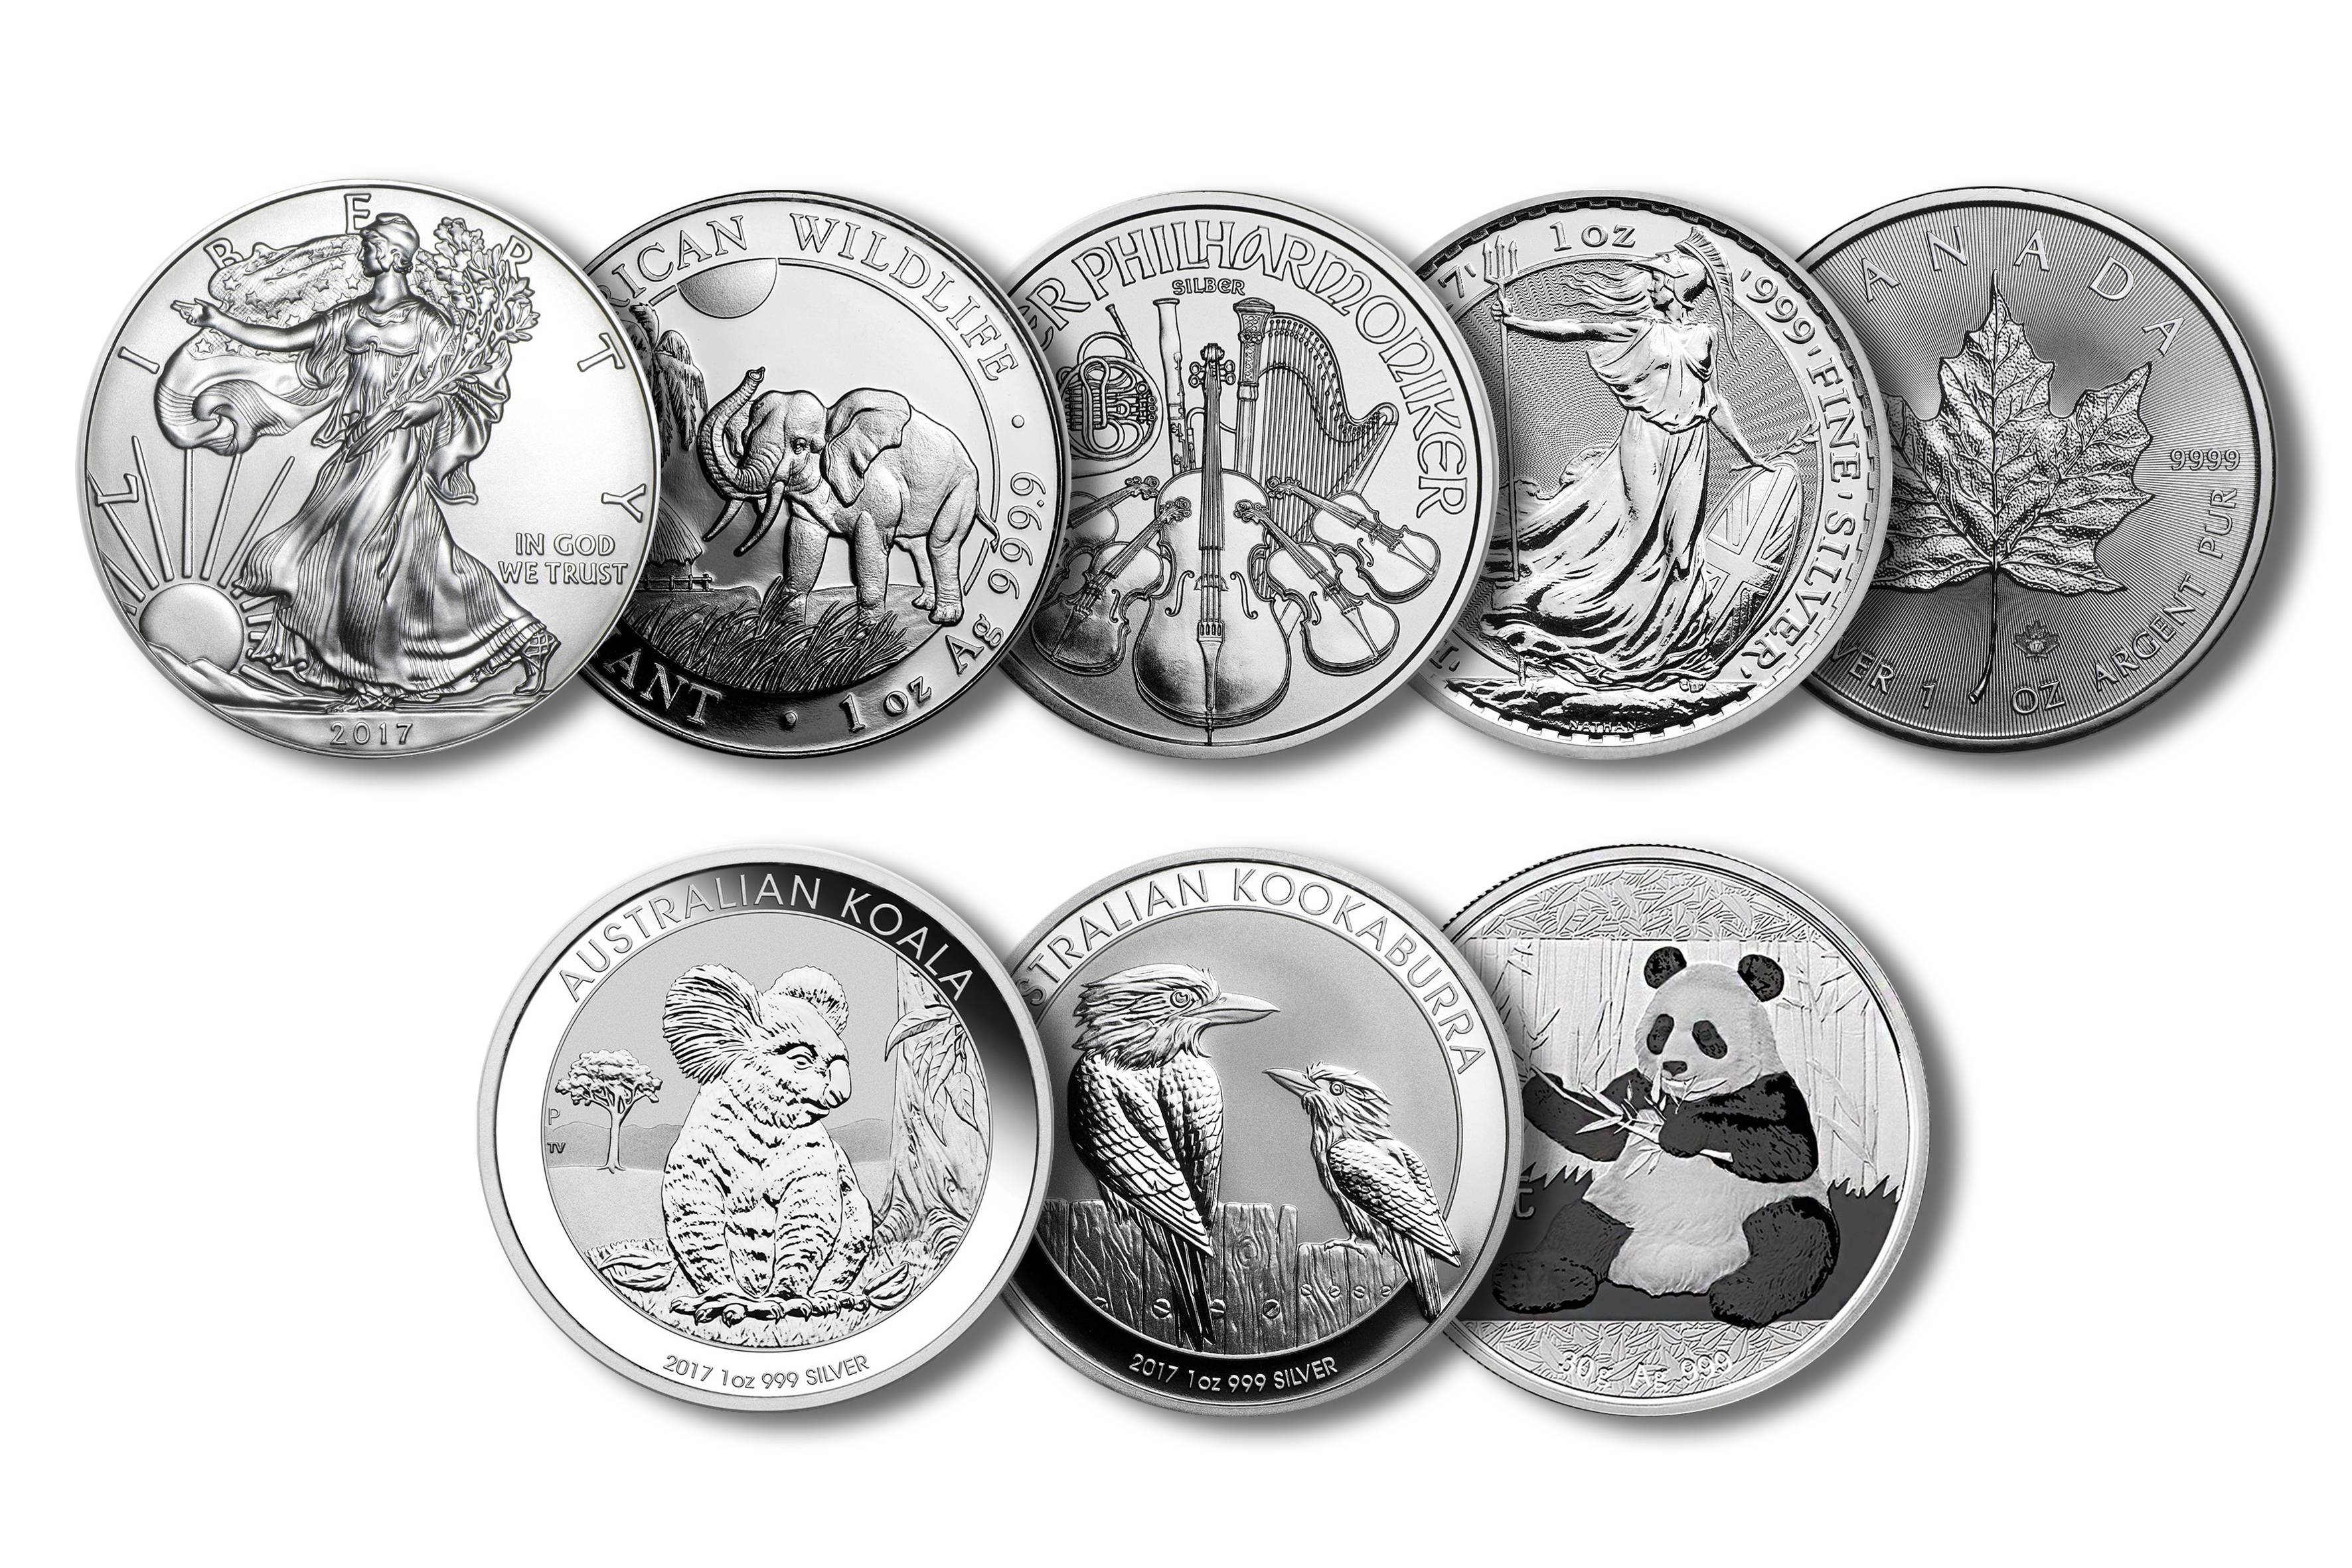 Купить серебряные монеты цены. Коллекционные и инвестиционные монеты. Серебряная монета. Инвестиционные монеты из драгоценных металлов. Памятные монеты из драгоценных металлов.